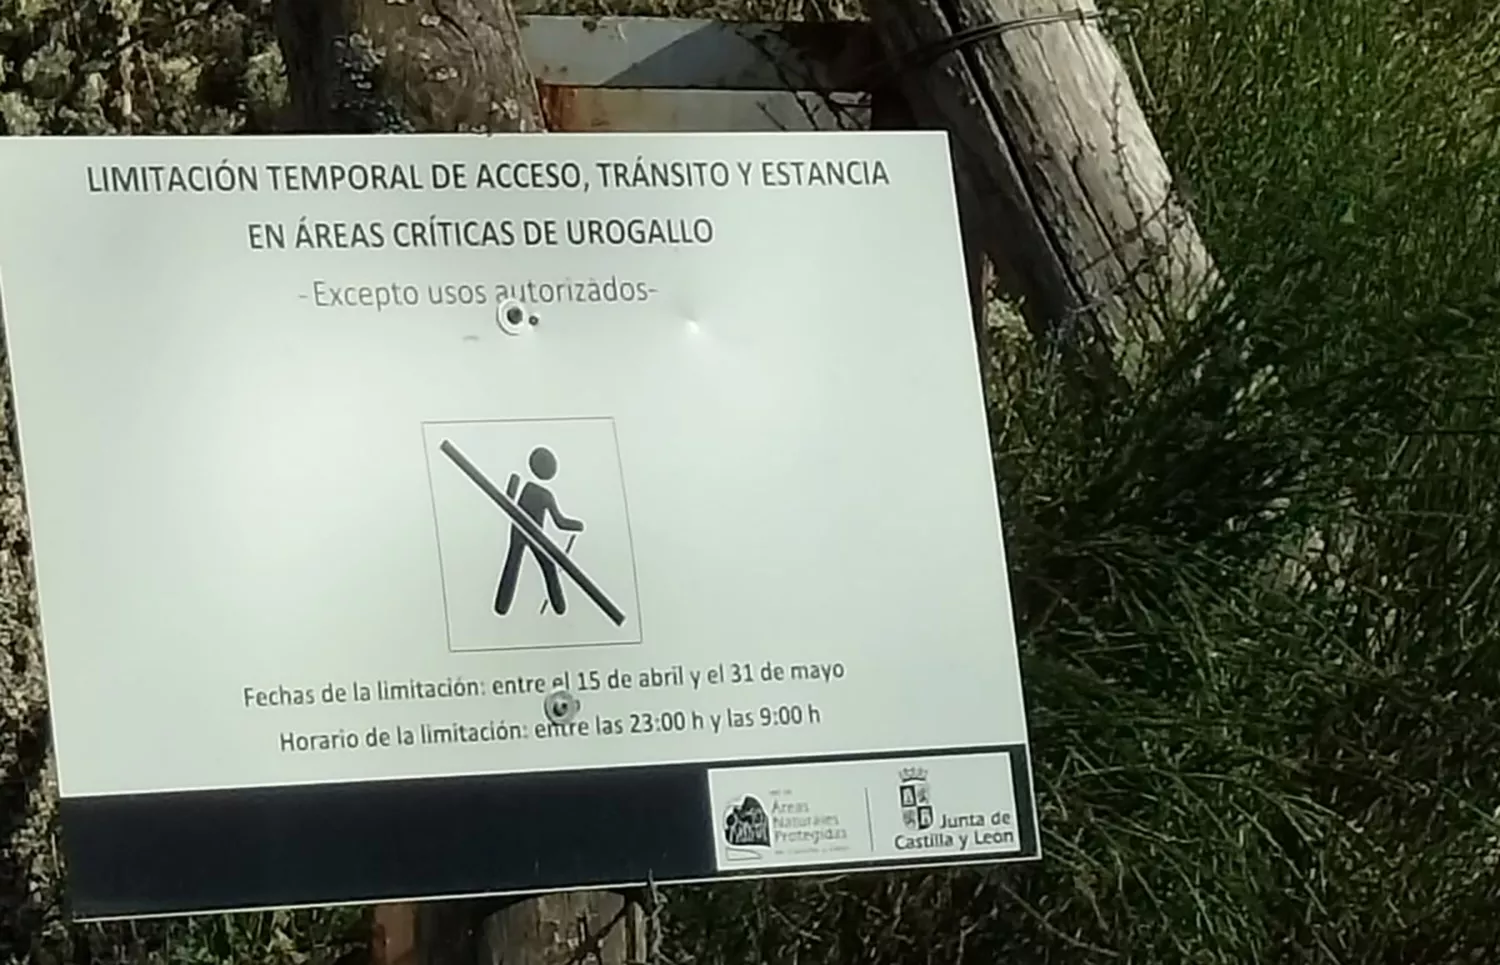 Restringido temporalmente el acceso a áreas críticas de urogallo en Palacios del Sil, Villablino y Murias de Paredes